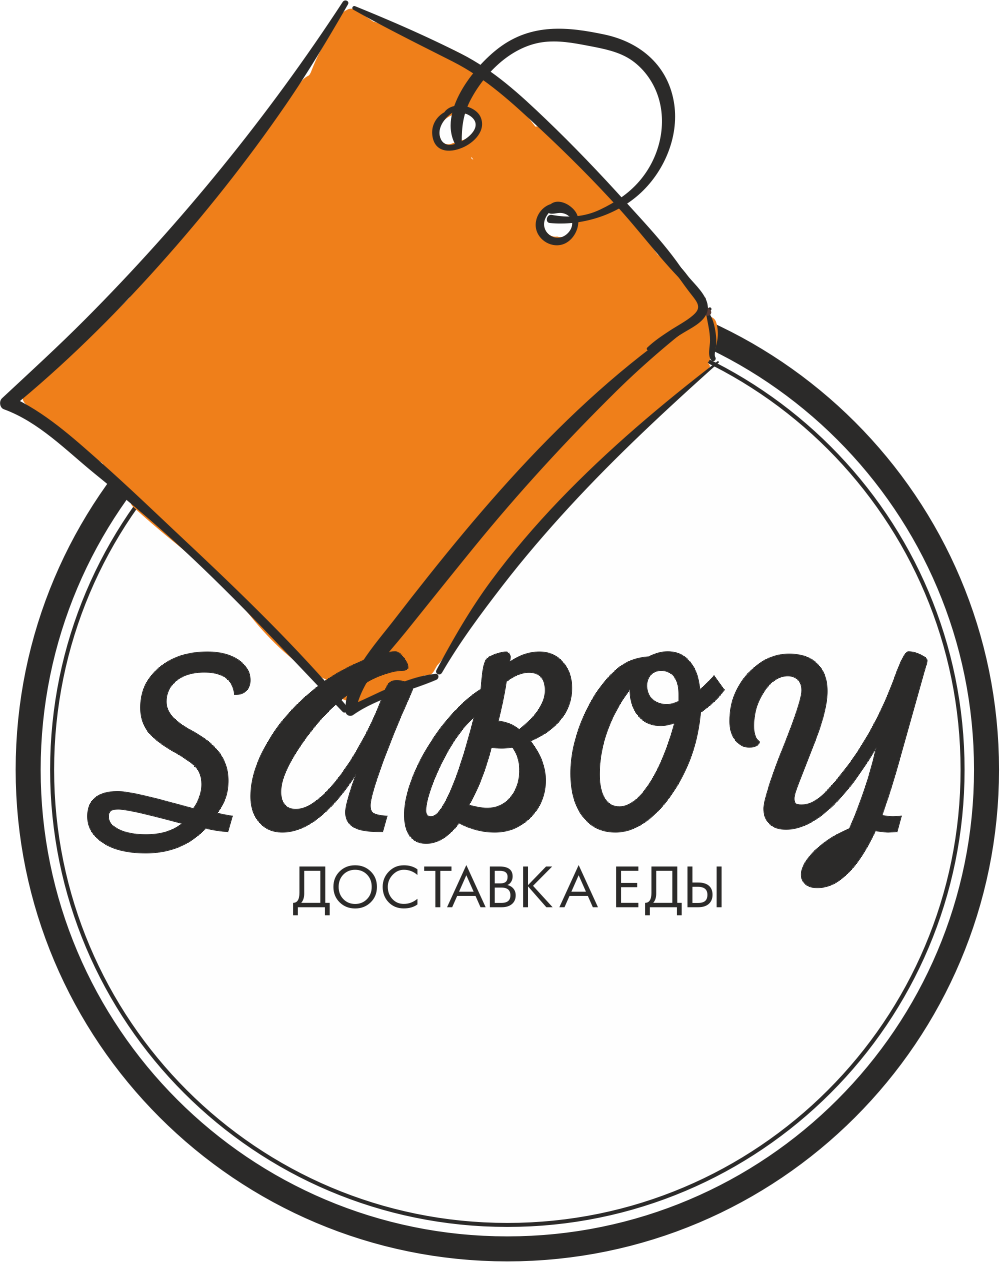 Пицца-комбо с бесплатной доставкой от службы "Saboy" от 27 руб. + навынос!